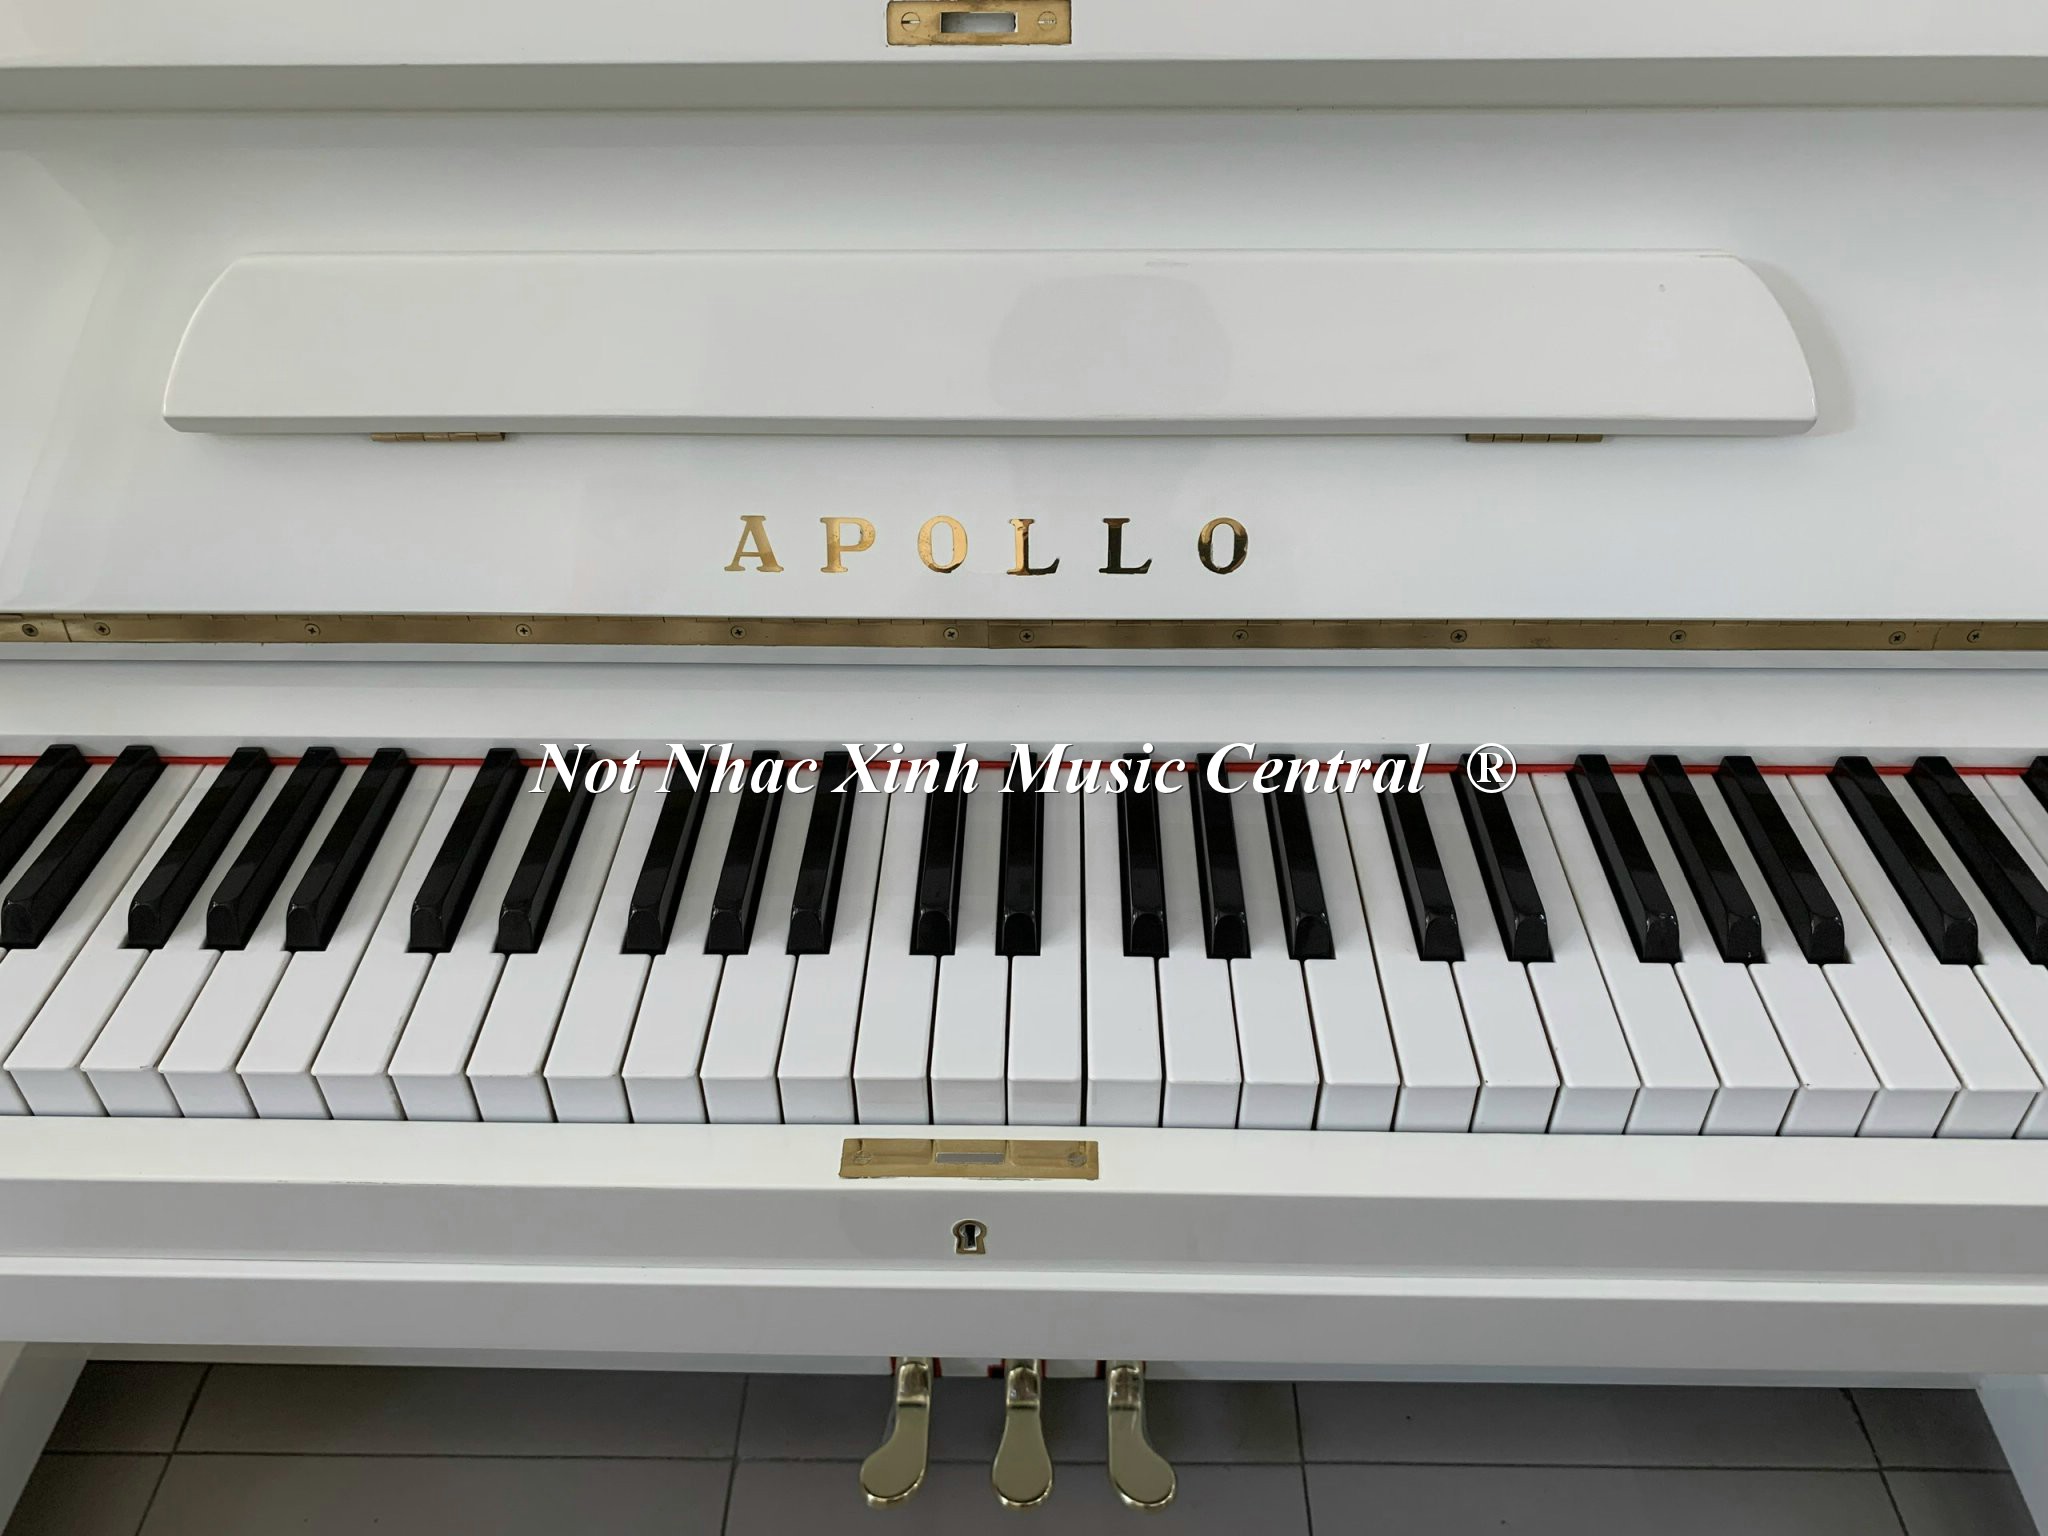 Đàn piano cơ Apollo No. 180